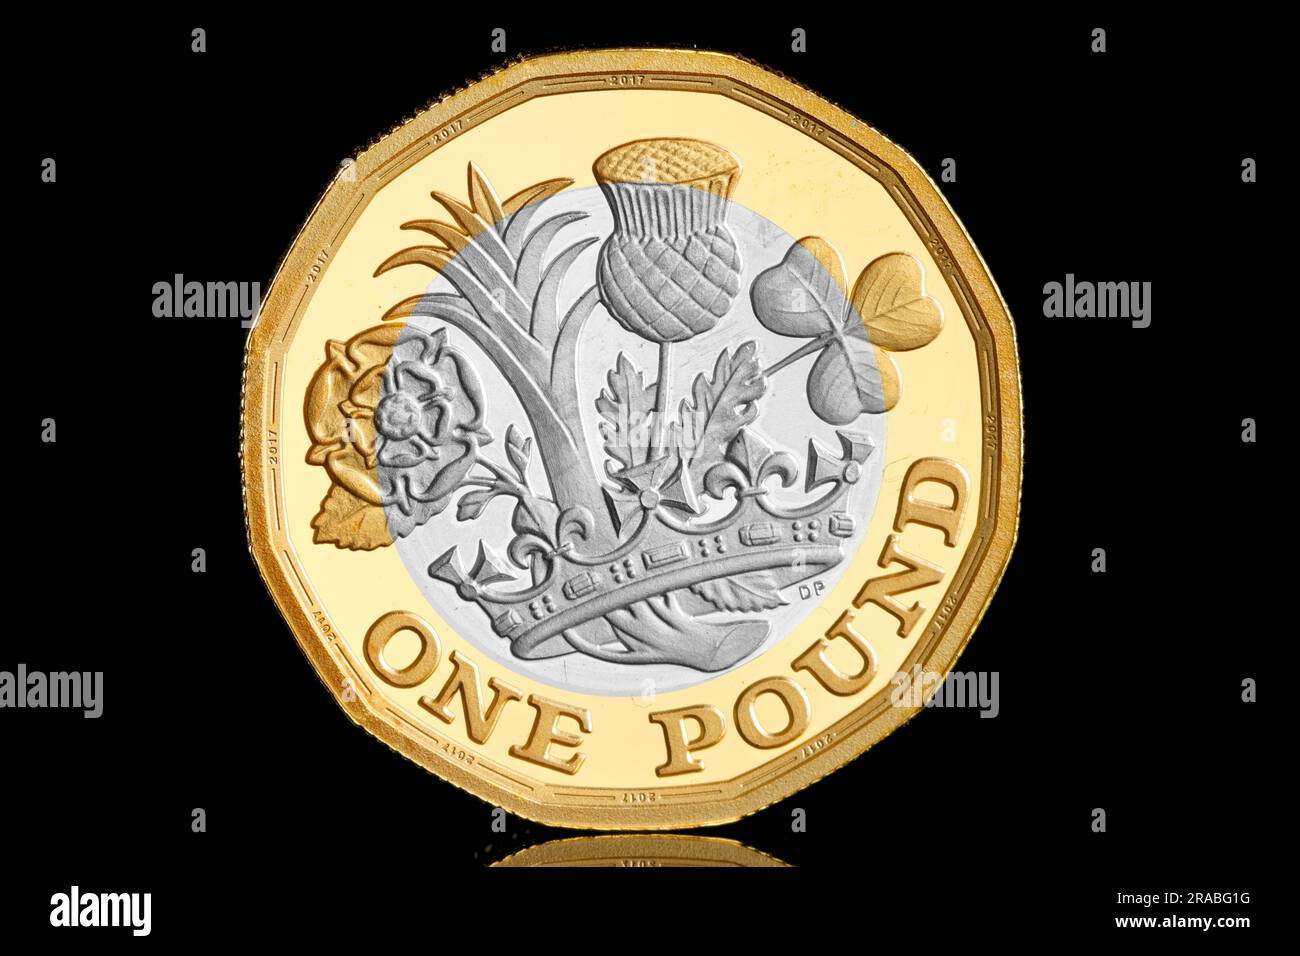 Rovescio della nuova moneta da 12 lati con un fiore che rappresenta ogni nazione del Regno Unito. Questo è stato introdotto nel 2017 Foto Stock